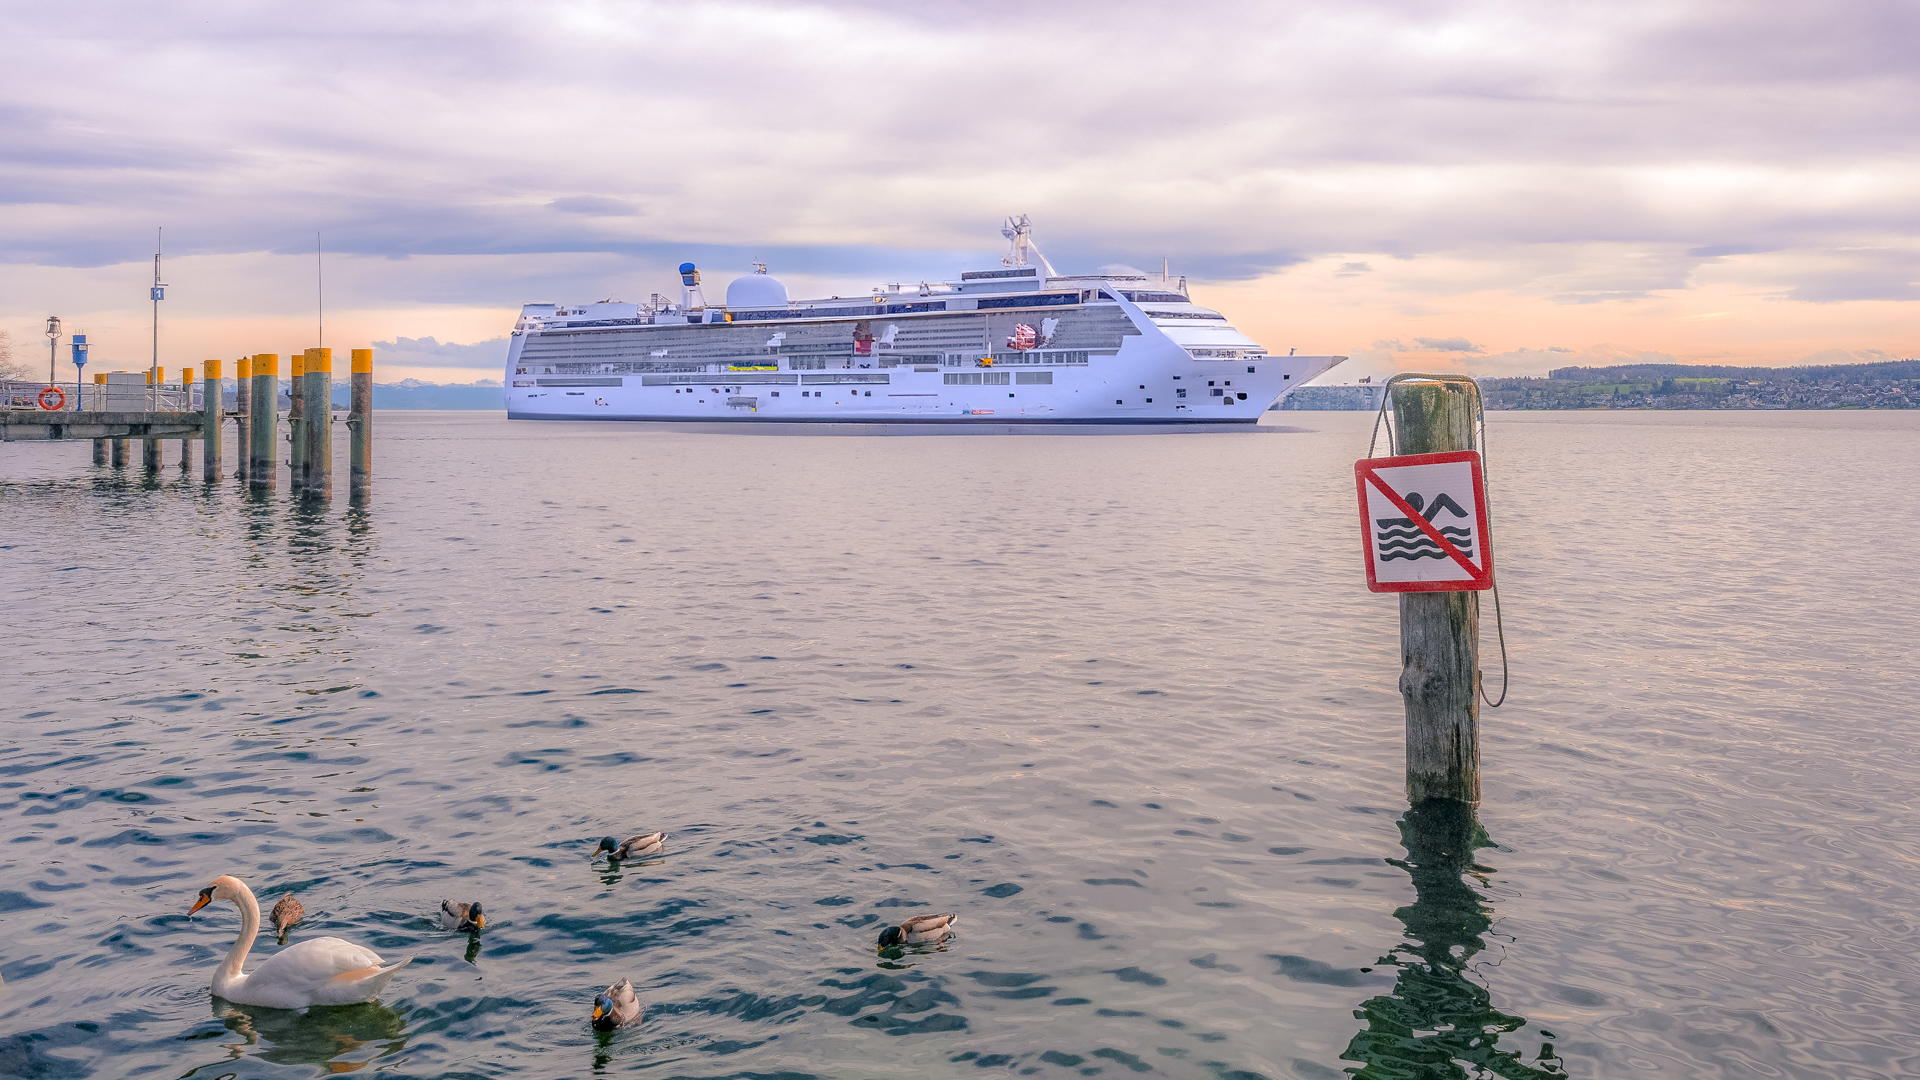 Fakefoto eines Kreuzfahrtschiffes auf dem Bodensee